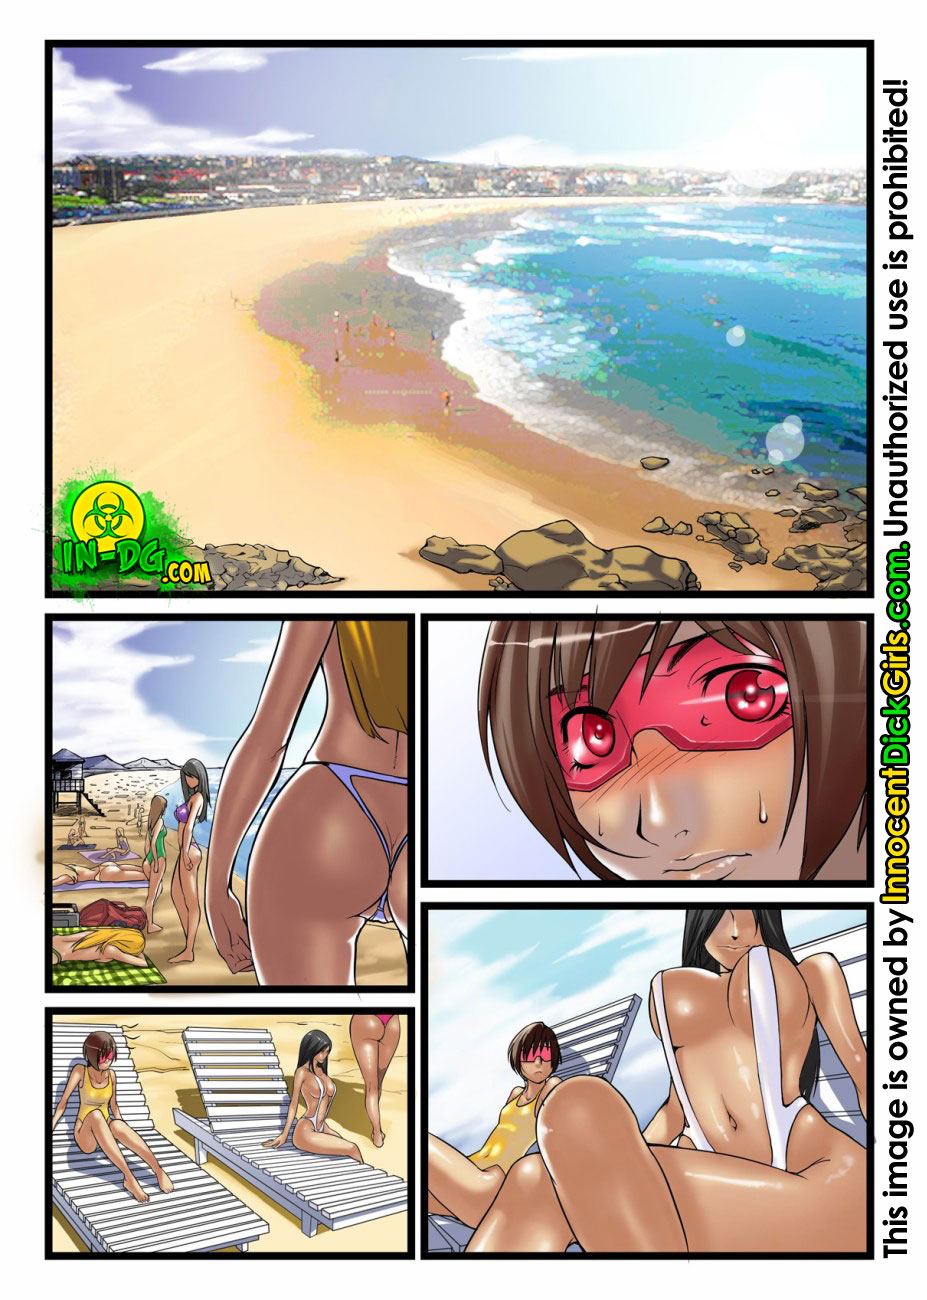 Порно комикс про пляж фото 105